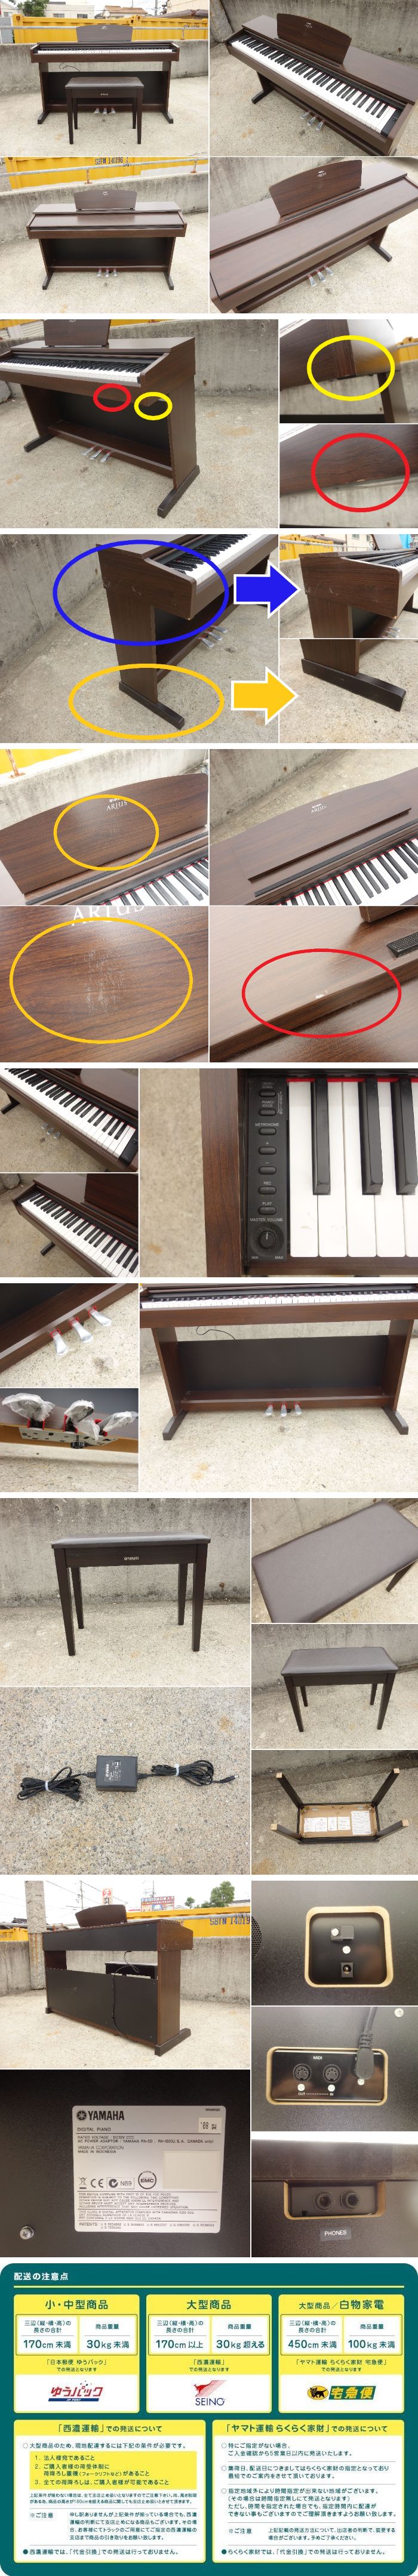 購入しD▼ヤマハ デジタルピアノ 電子ピアノ キーボード アリウス ARIUS 88鍵盤 椅子 ダークアルダー調 YDP-140 (30729) ヤマハ